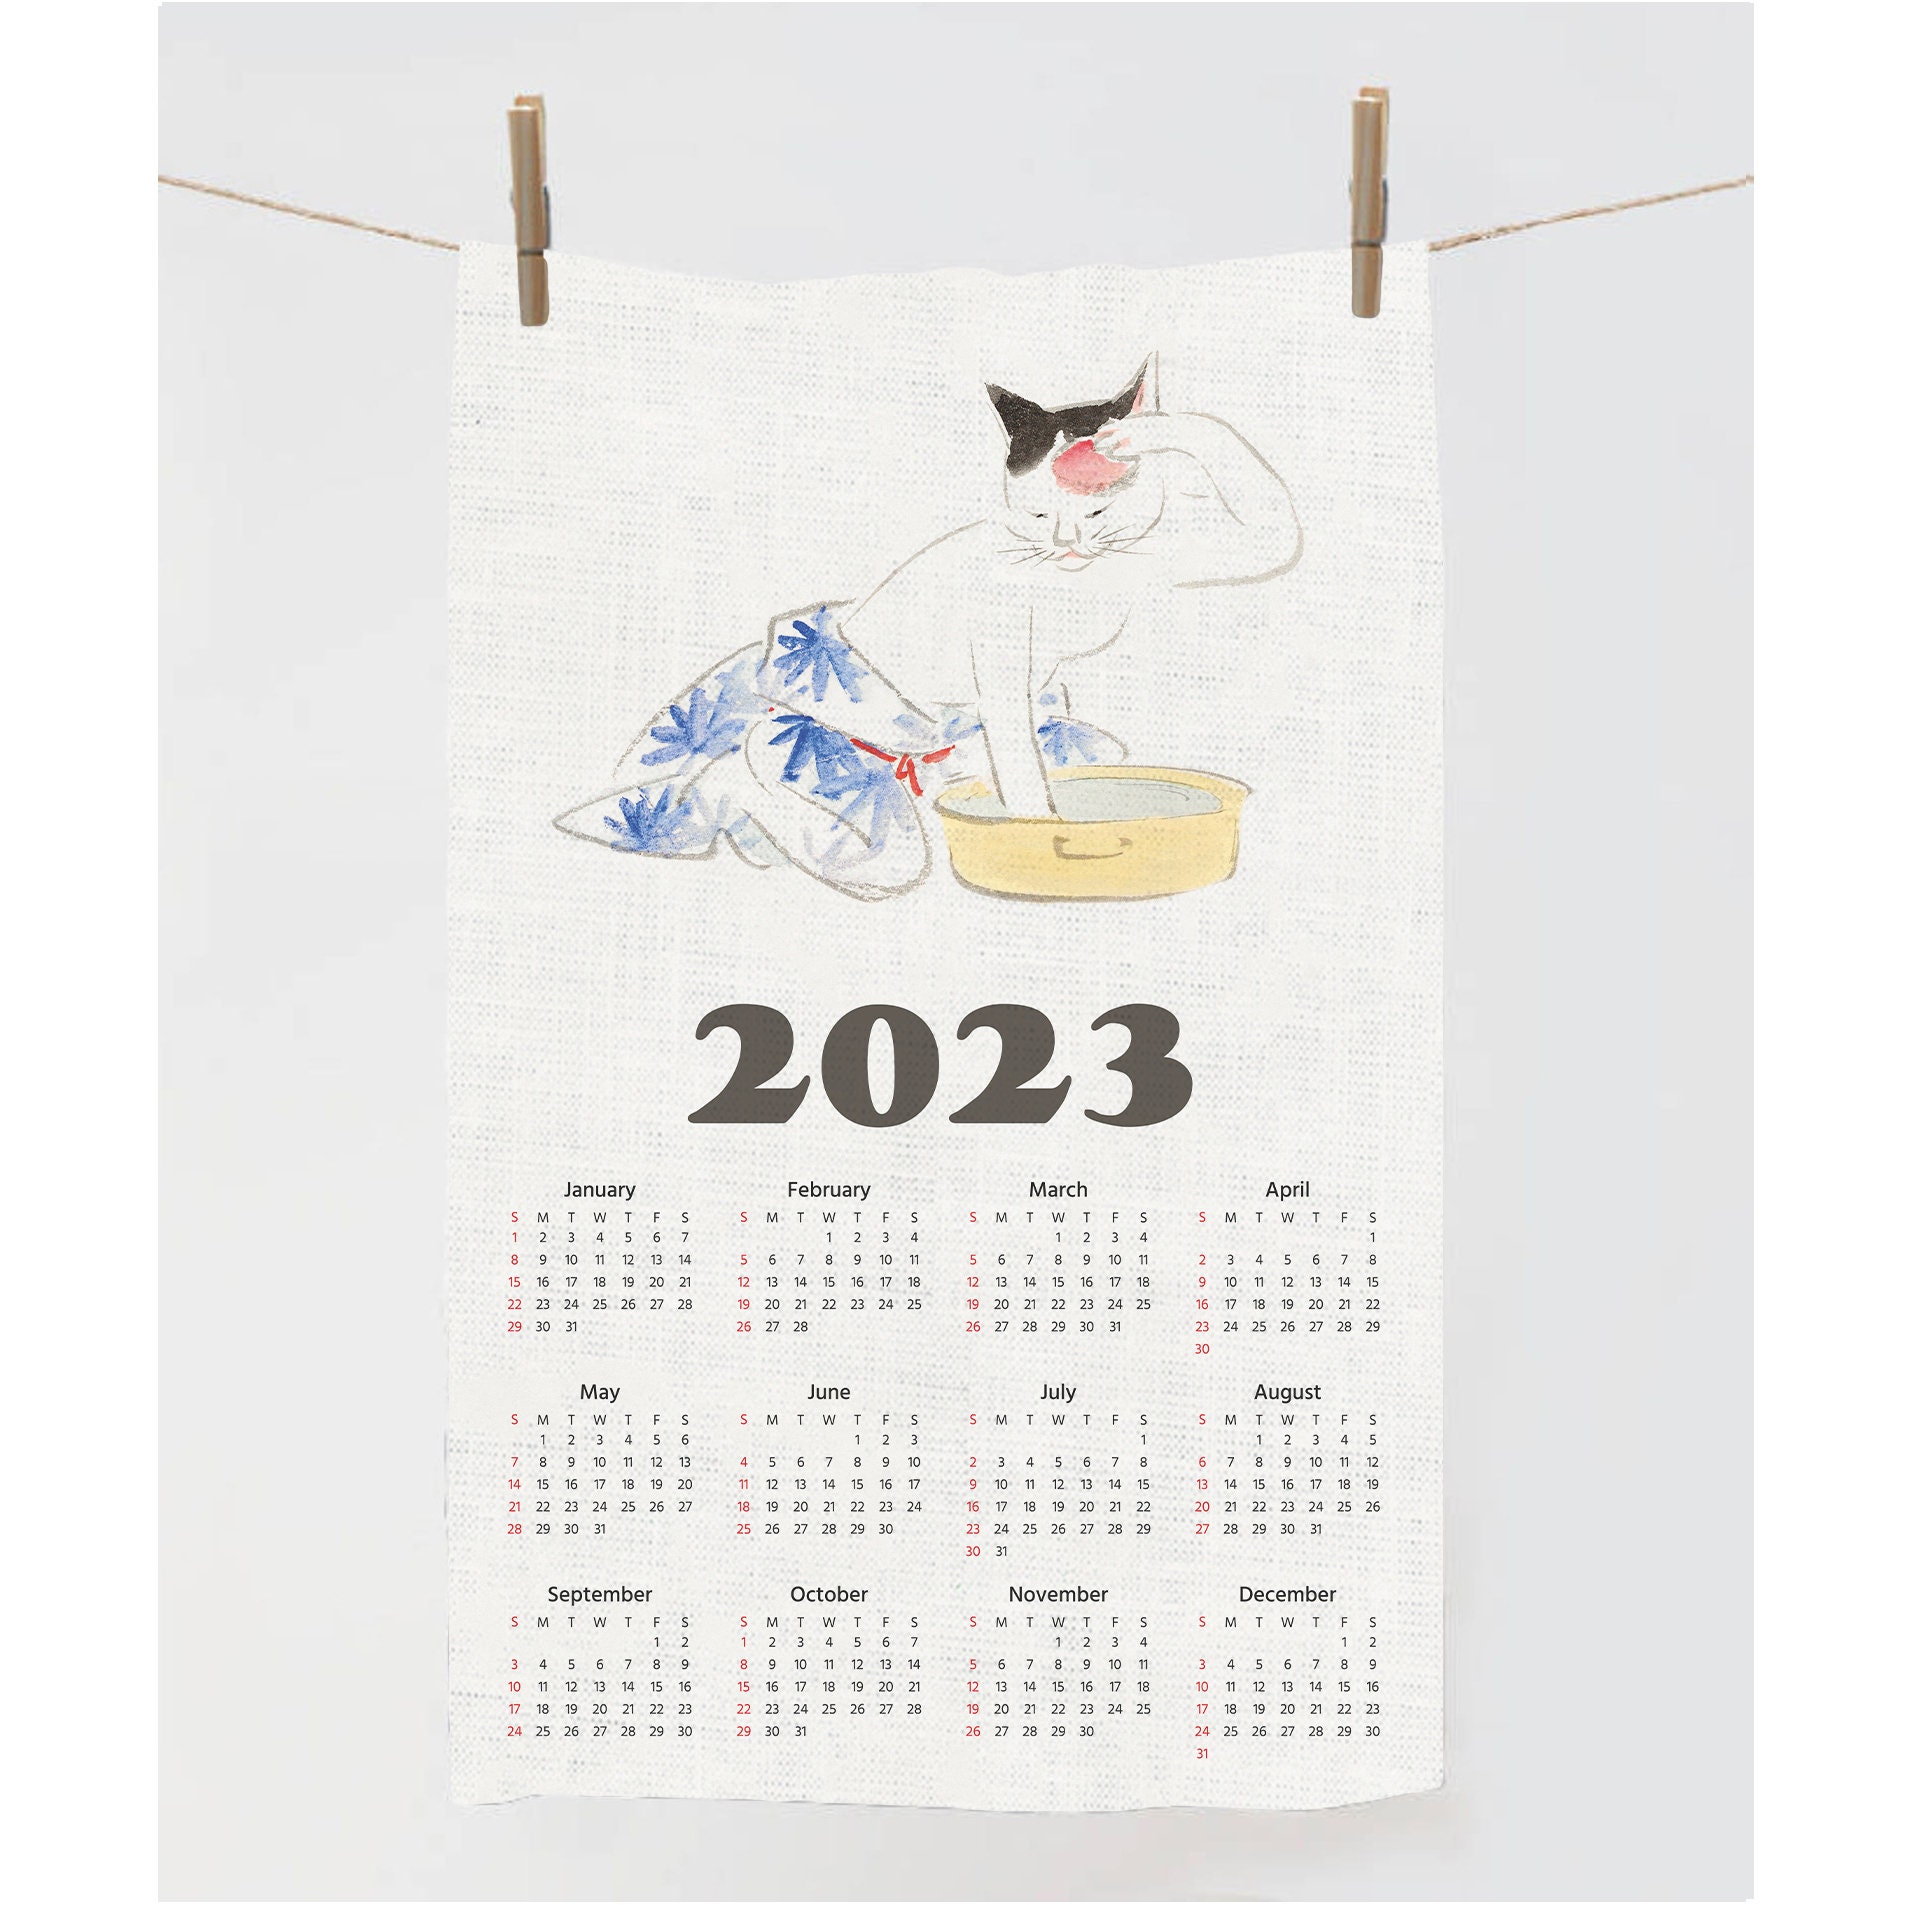 2023-calendar-towel-tea-towel-illustration-cat-towel-zodiac-tea